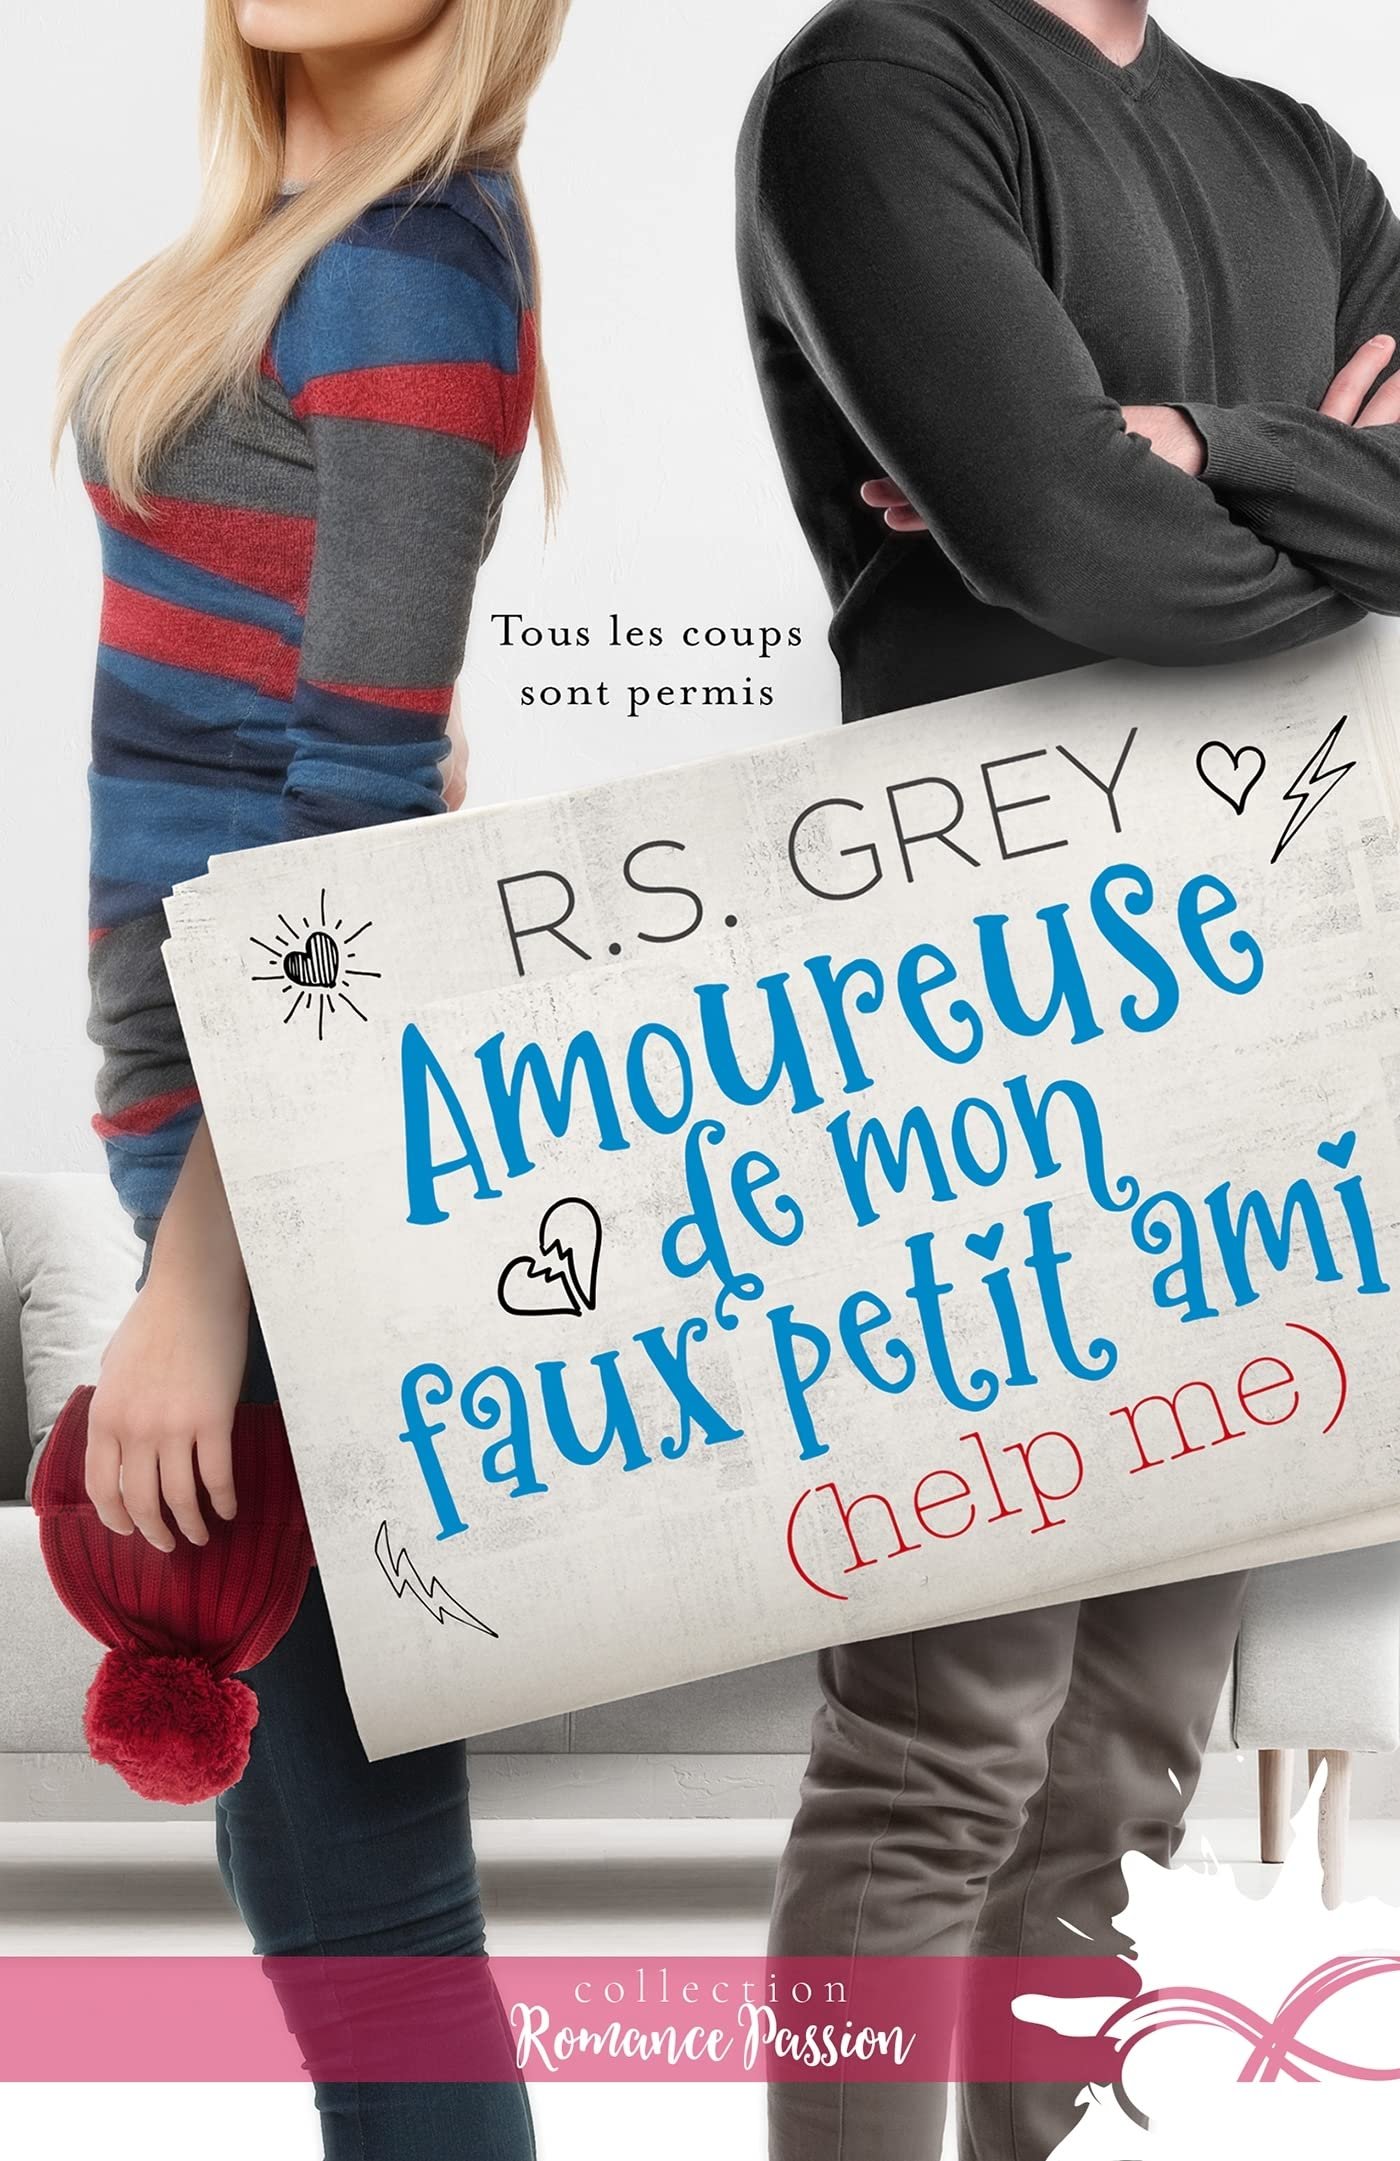 R. S. Grey – Amoureuse de mon faux petit ami (help me)